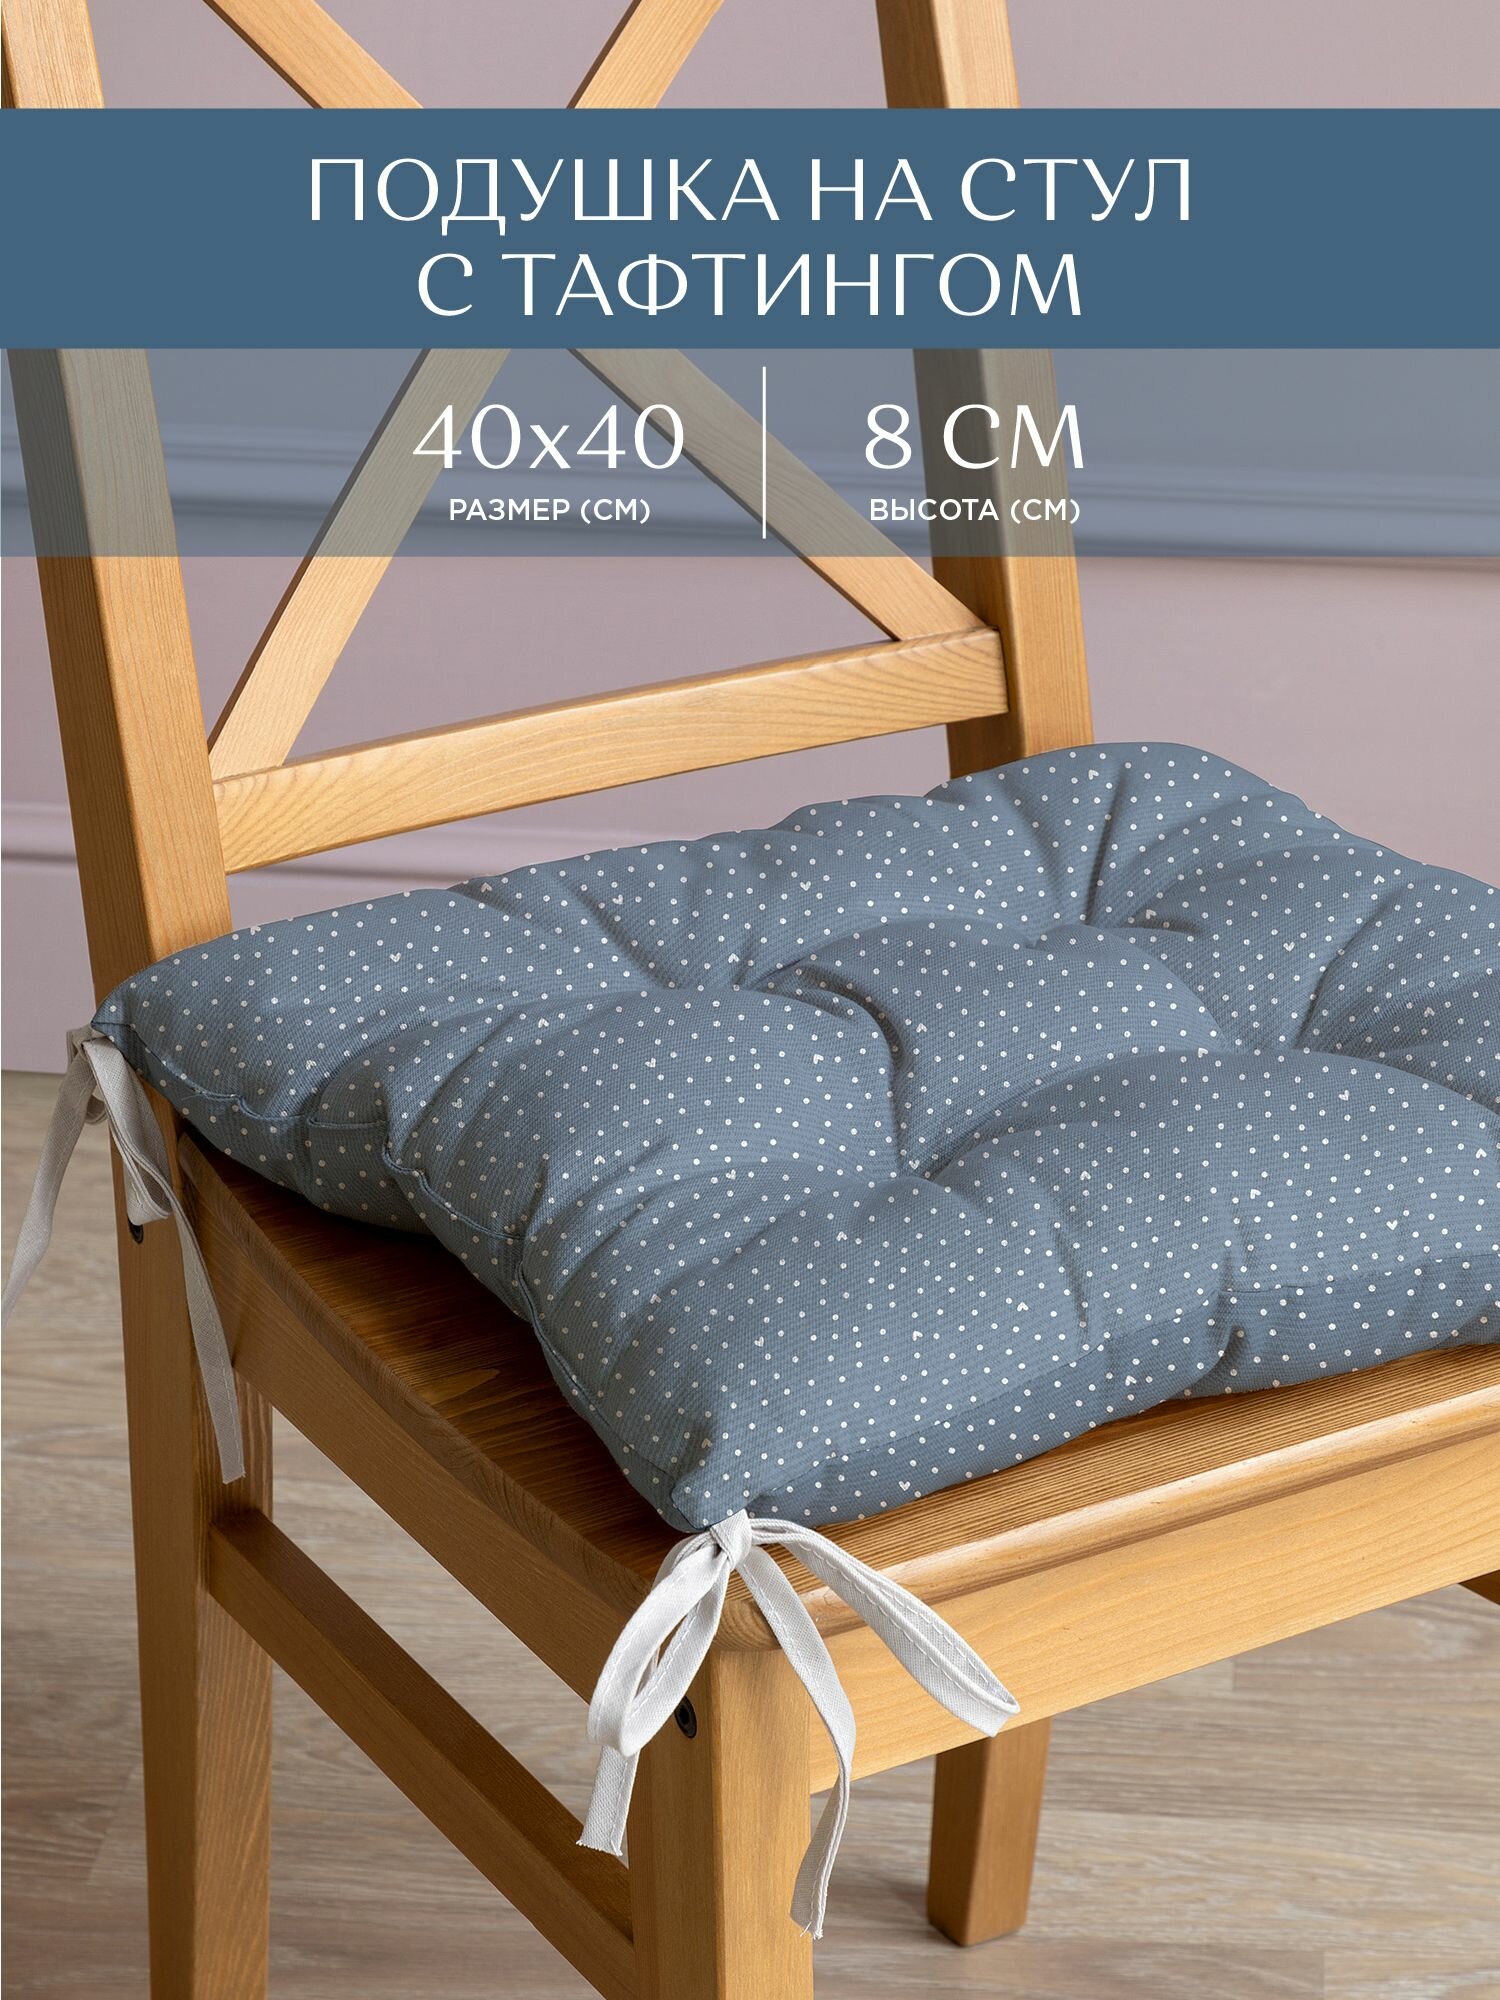 Подушка на стул с тафтингом квадратная 40х40 "Унисон" рис 33002-3 Love